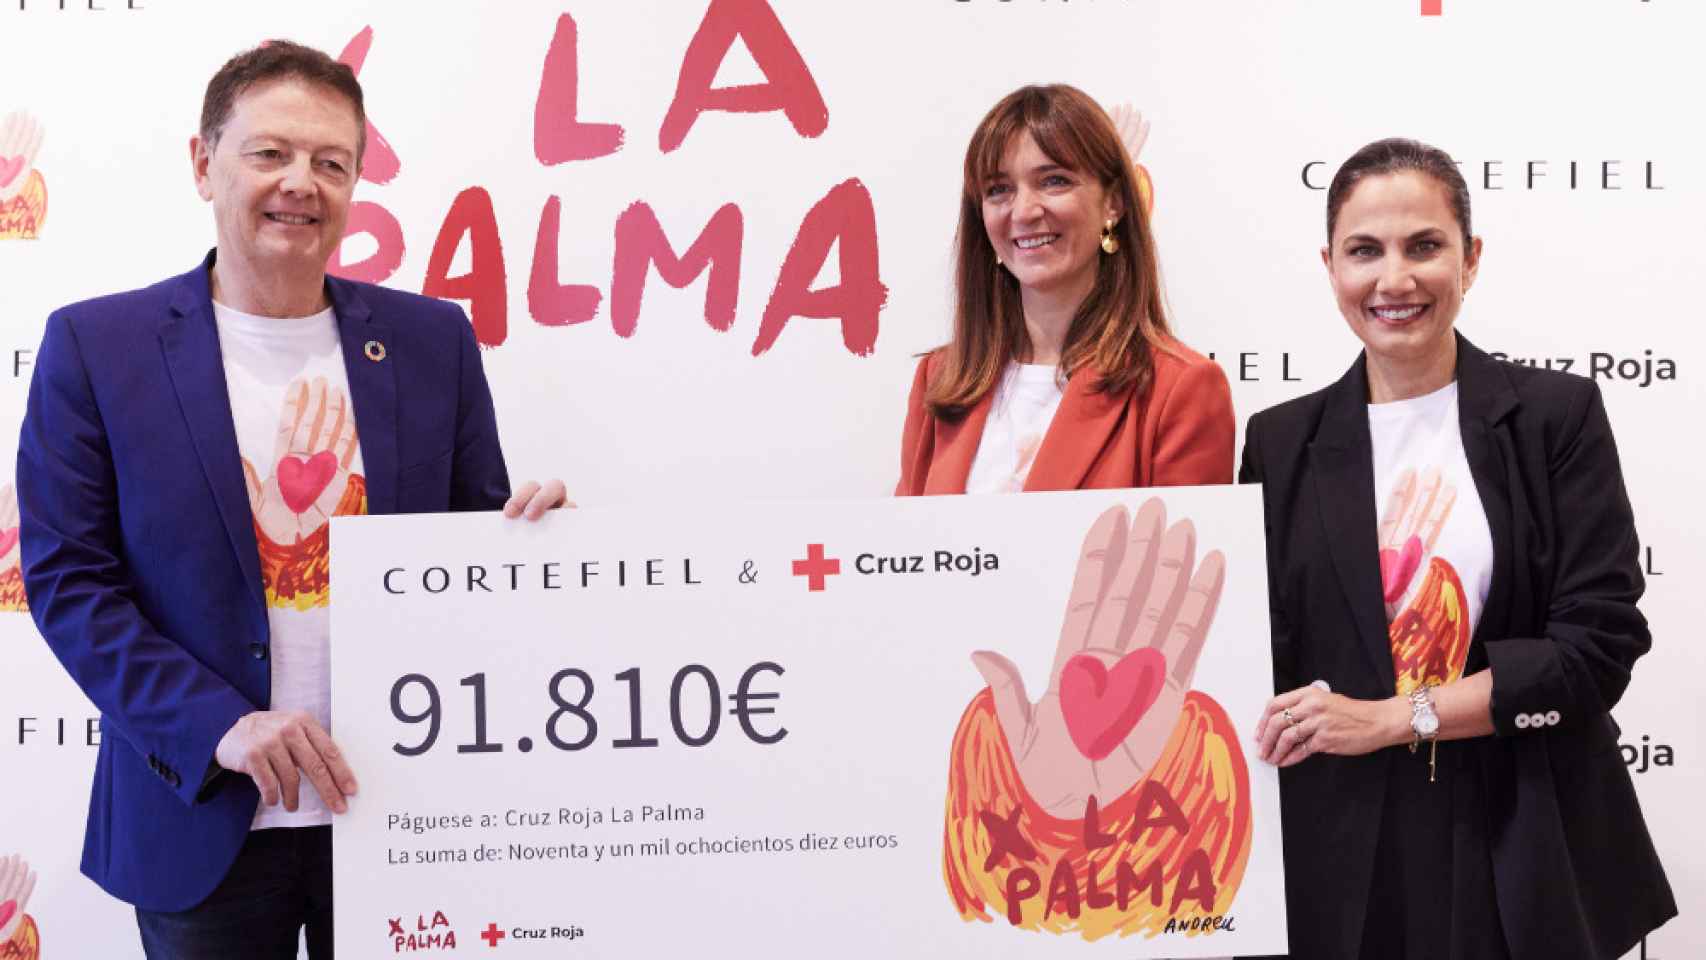 De izquierda a derecha: David Gregori (director de alianzas, Cruz Roja), María Sañudo (directora de marketing, Cortefiel) y Toni Acosta (actriz).